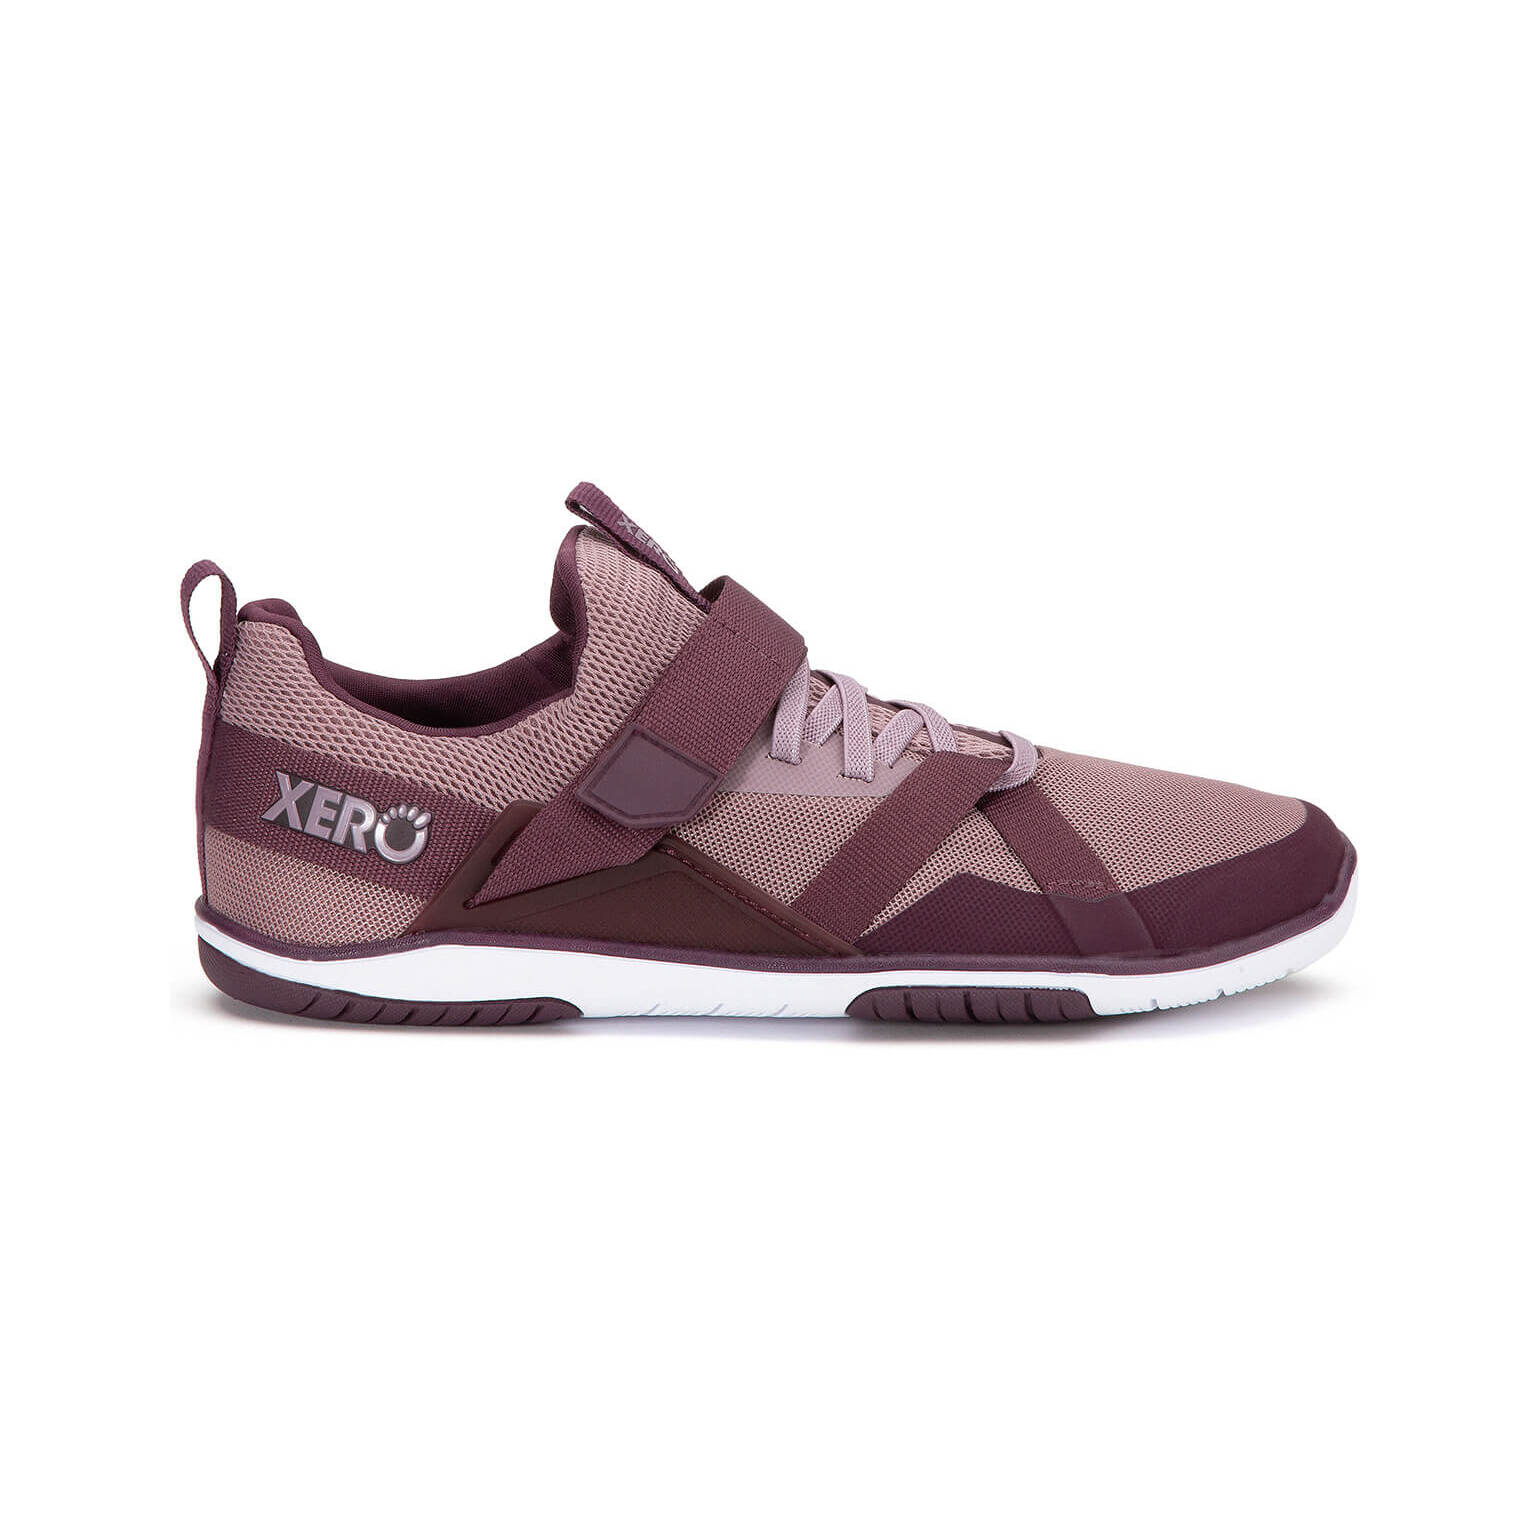 Chaussures de cross training femme Xero Shoes Forza